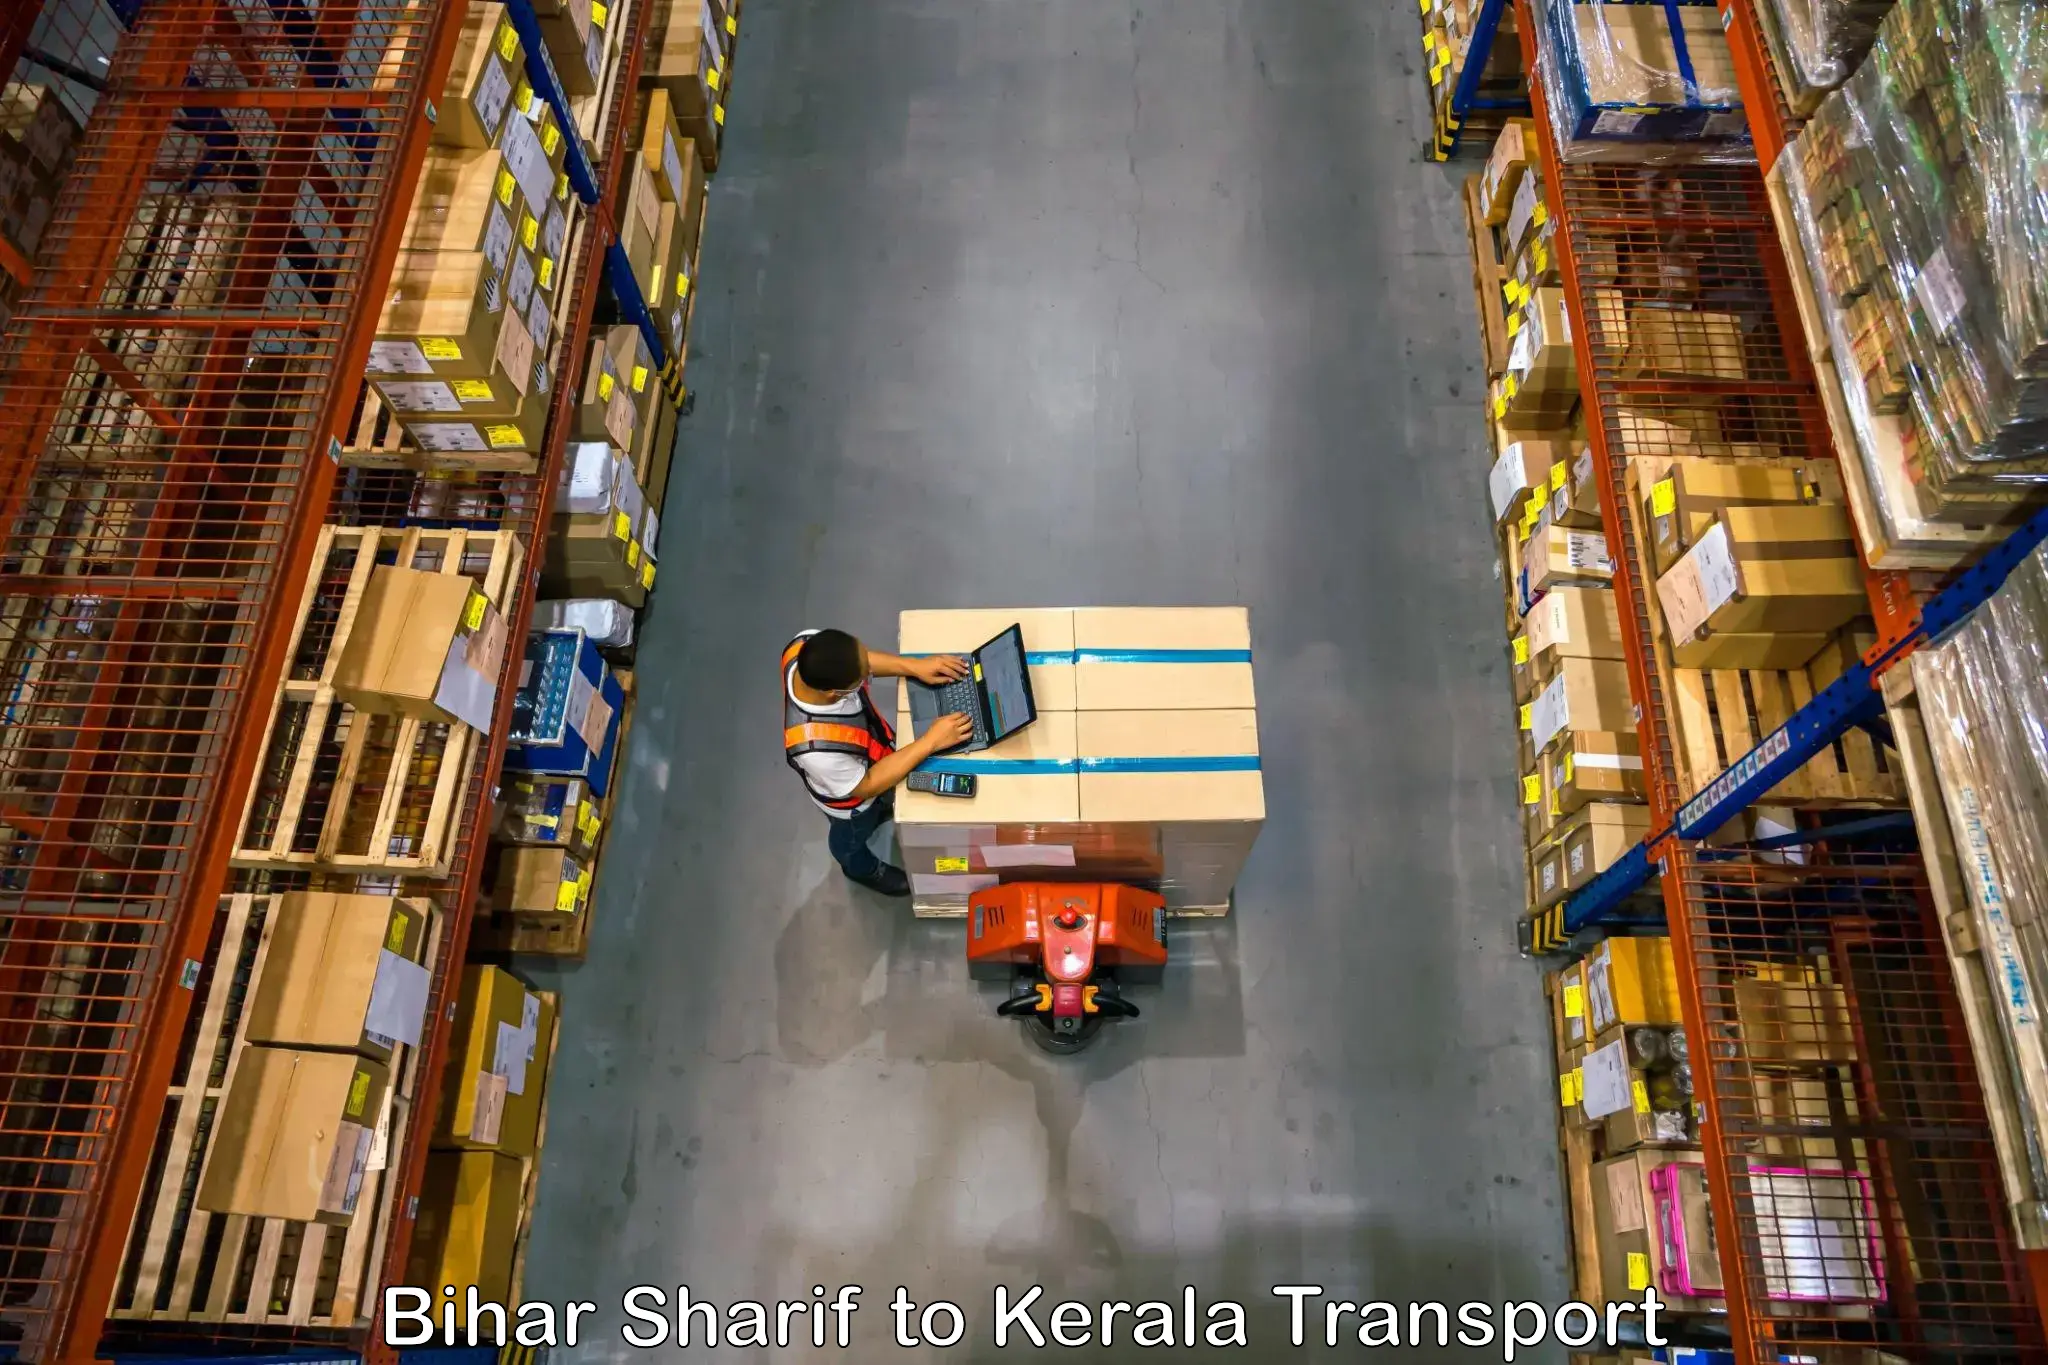 Shipping partner in Bihar Sharif to Parippally